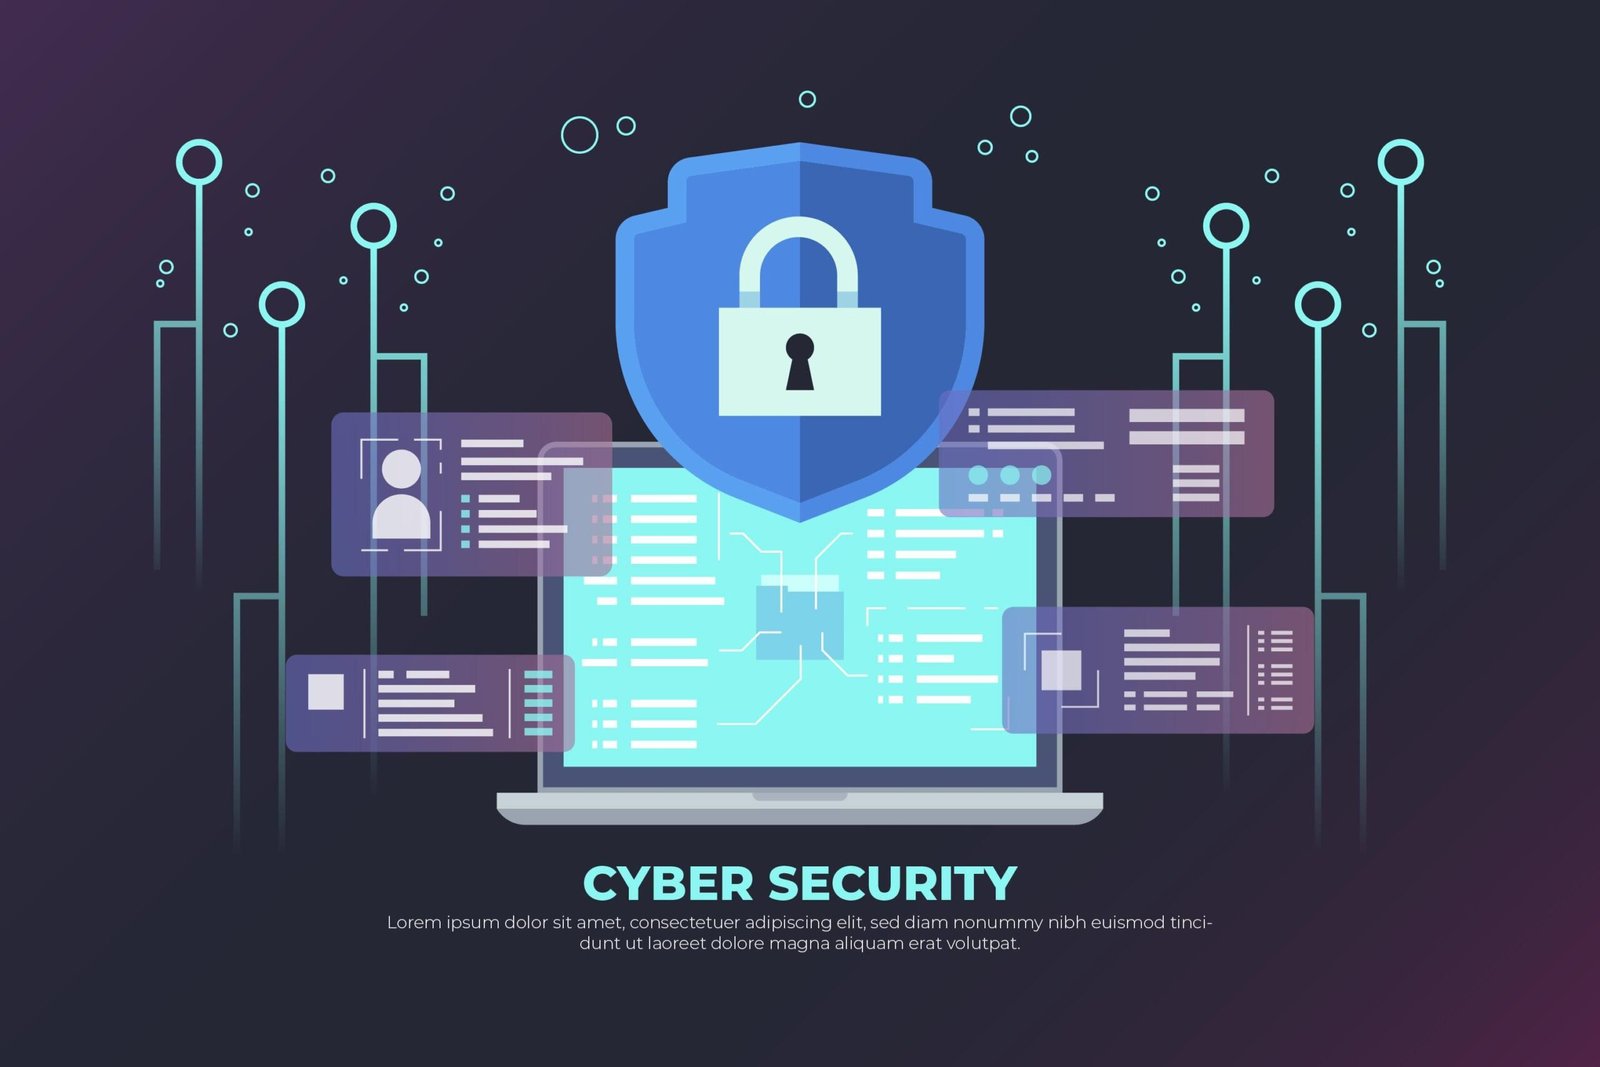 أهمية الأمن السيبراني: حماية البيانات وتحقيق الاستقرار الرقمي